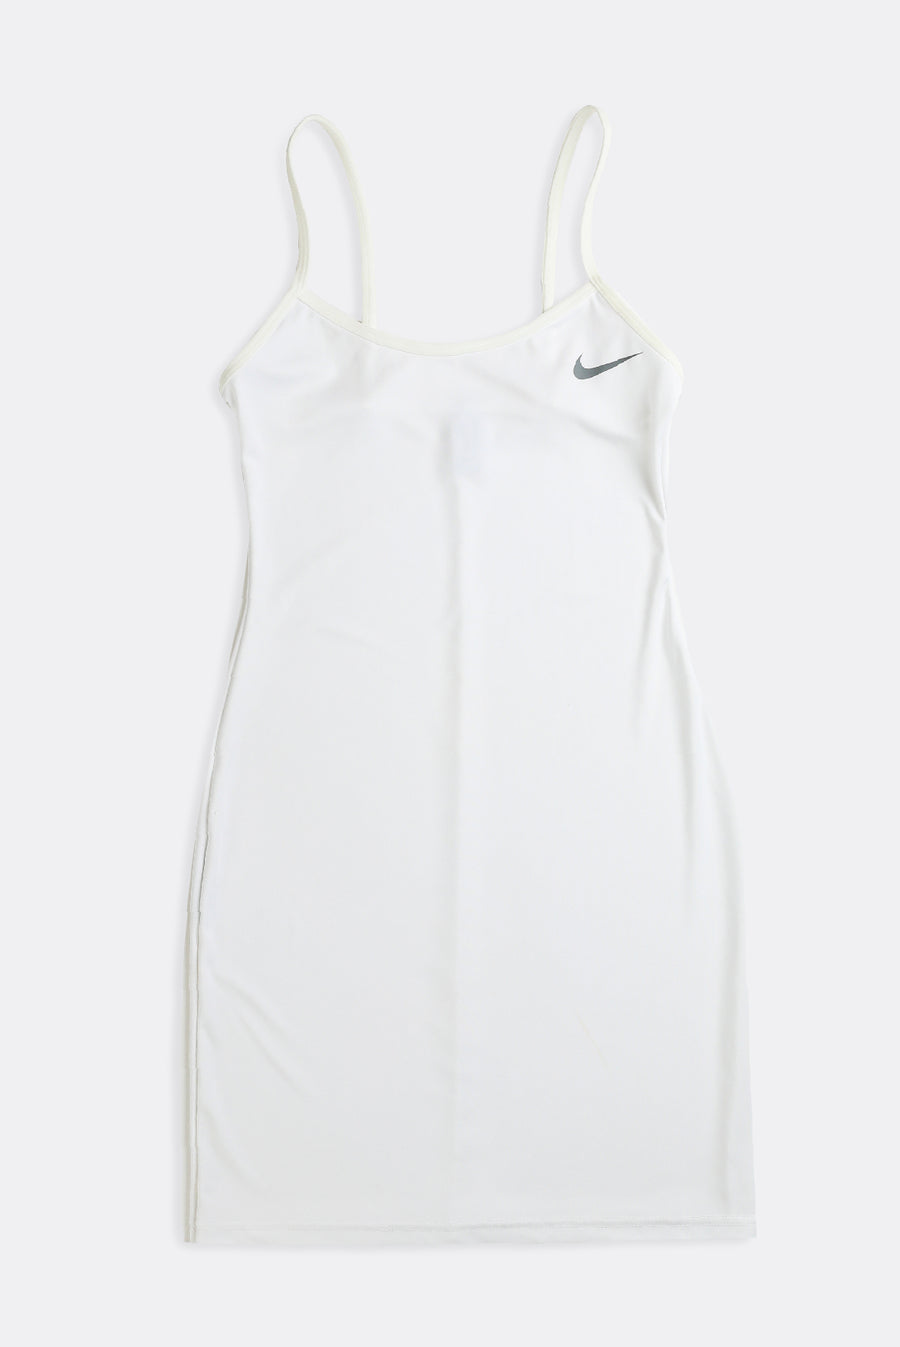 Rework Nike Athletic Mini Dress - S